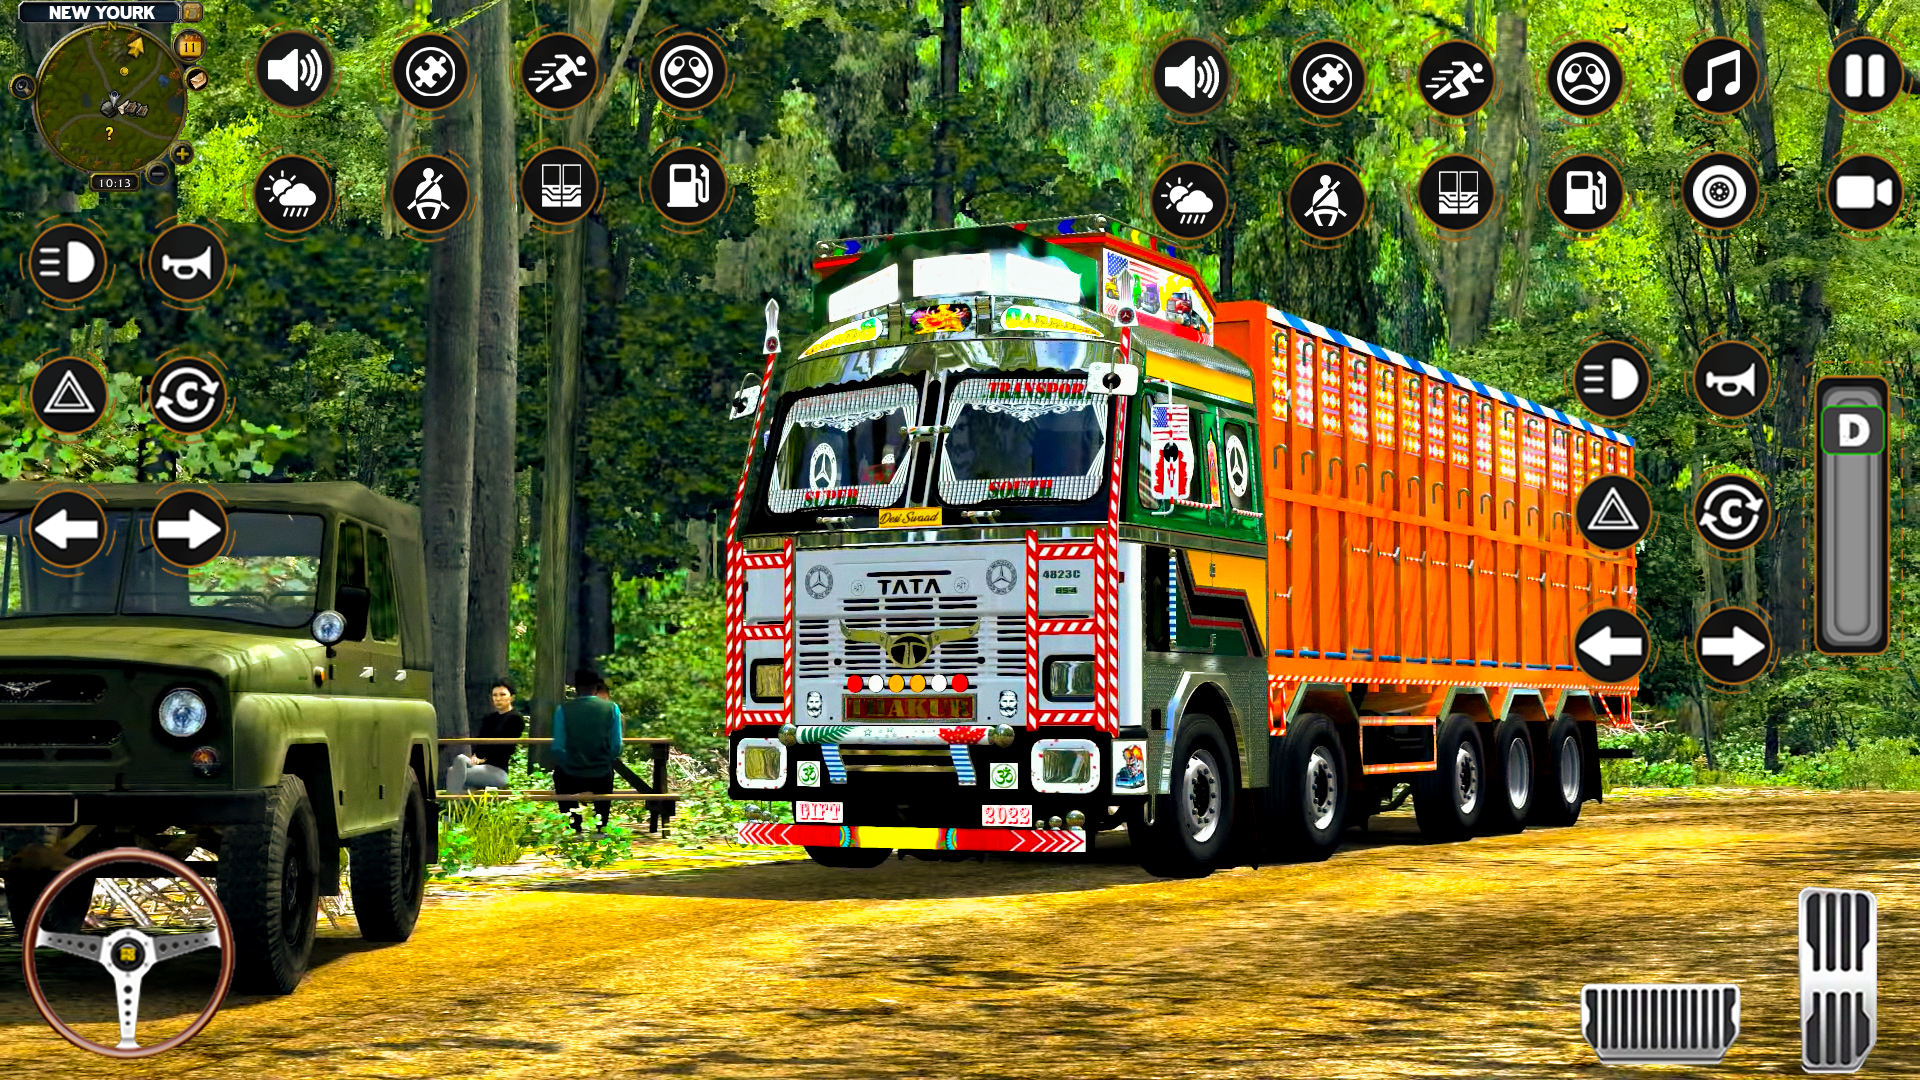 Truck Simulator Europe 3 (Novo Jogo de Caminhões Realista para Android) 